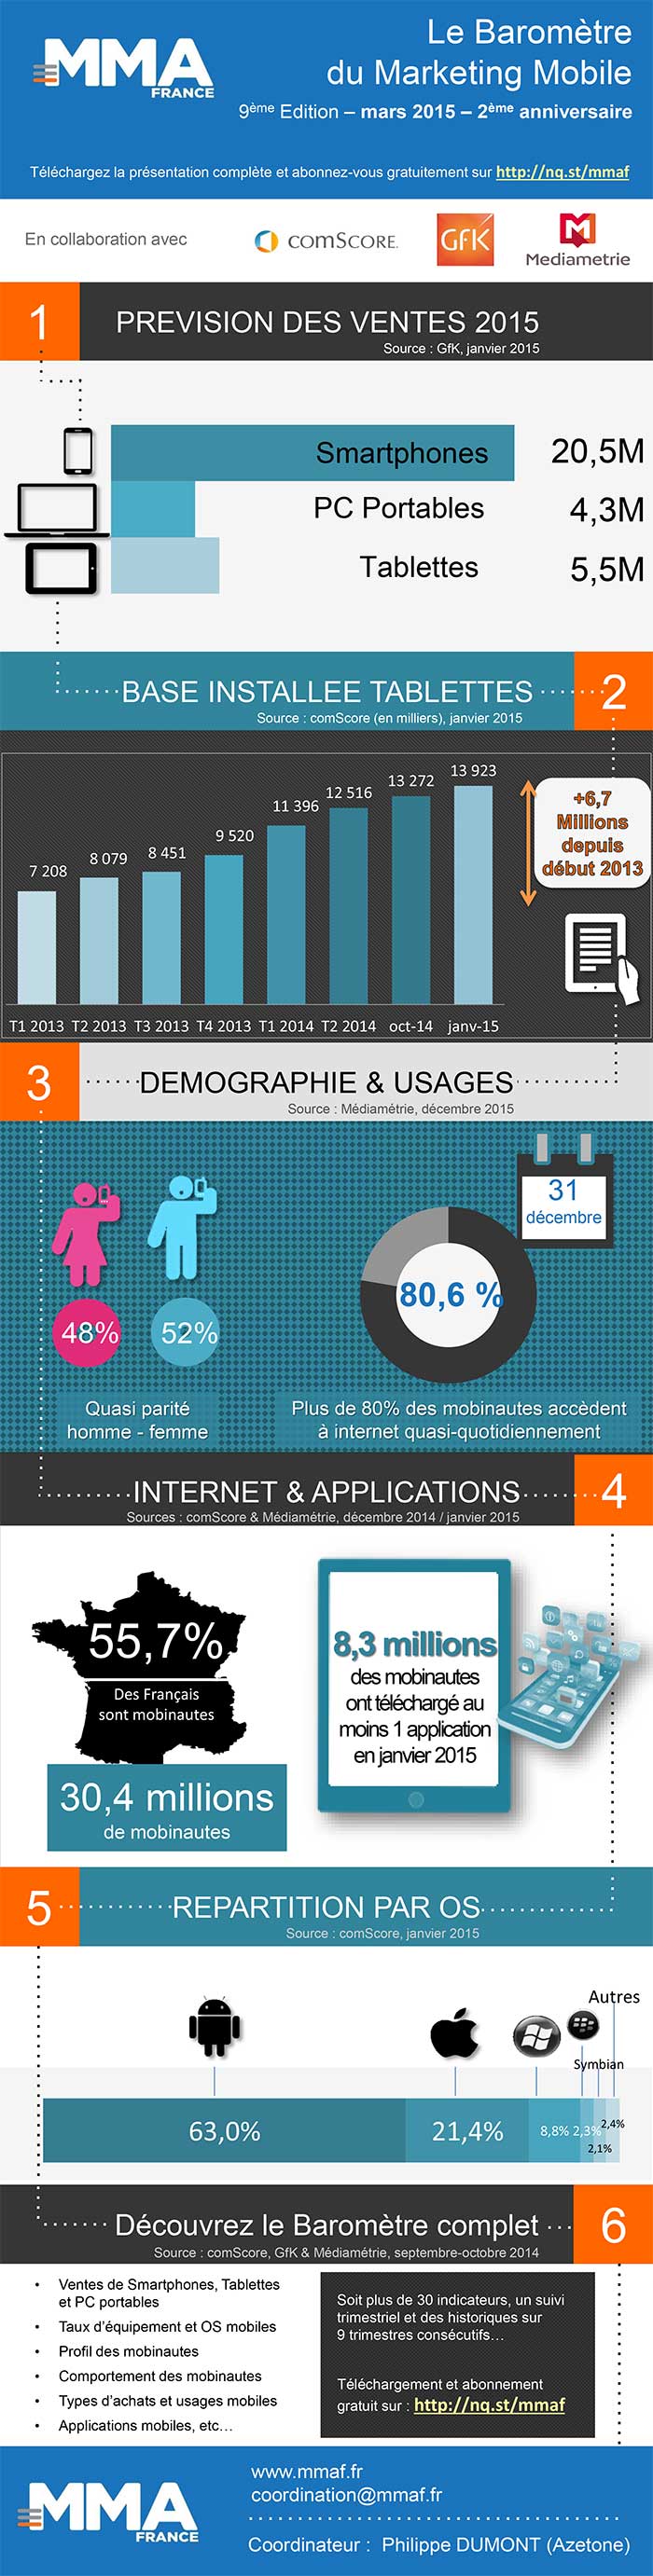 Barometre Mobile Marketing Association France Infographie T4 2014